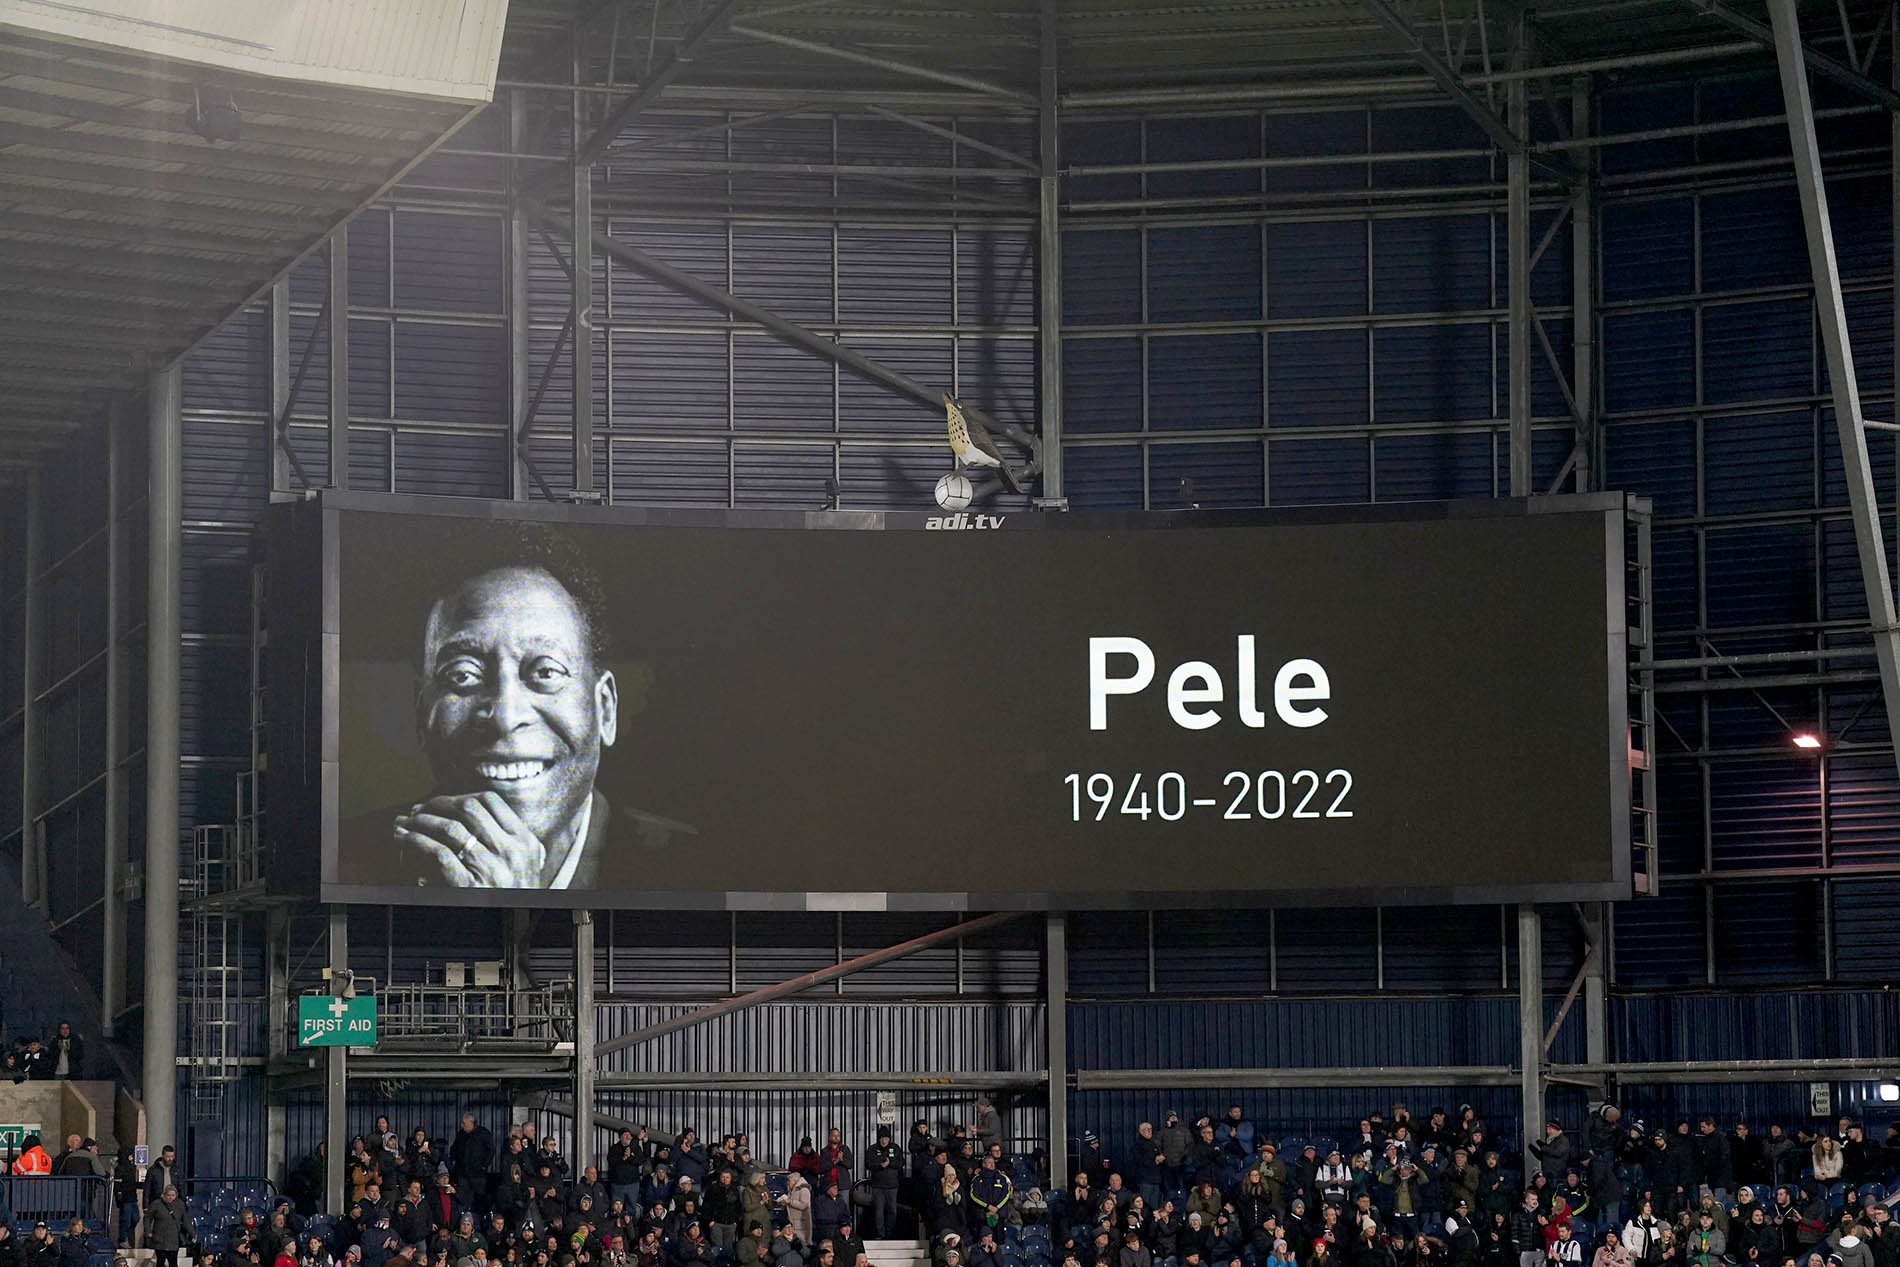 Velório do rei Pelé em Santos